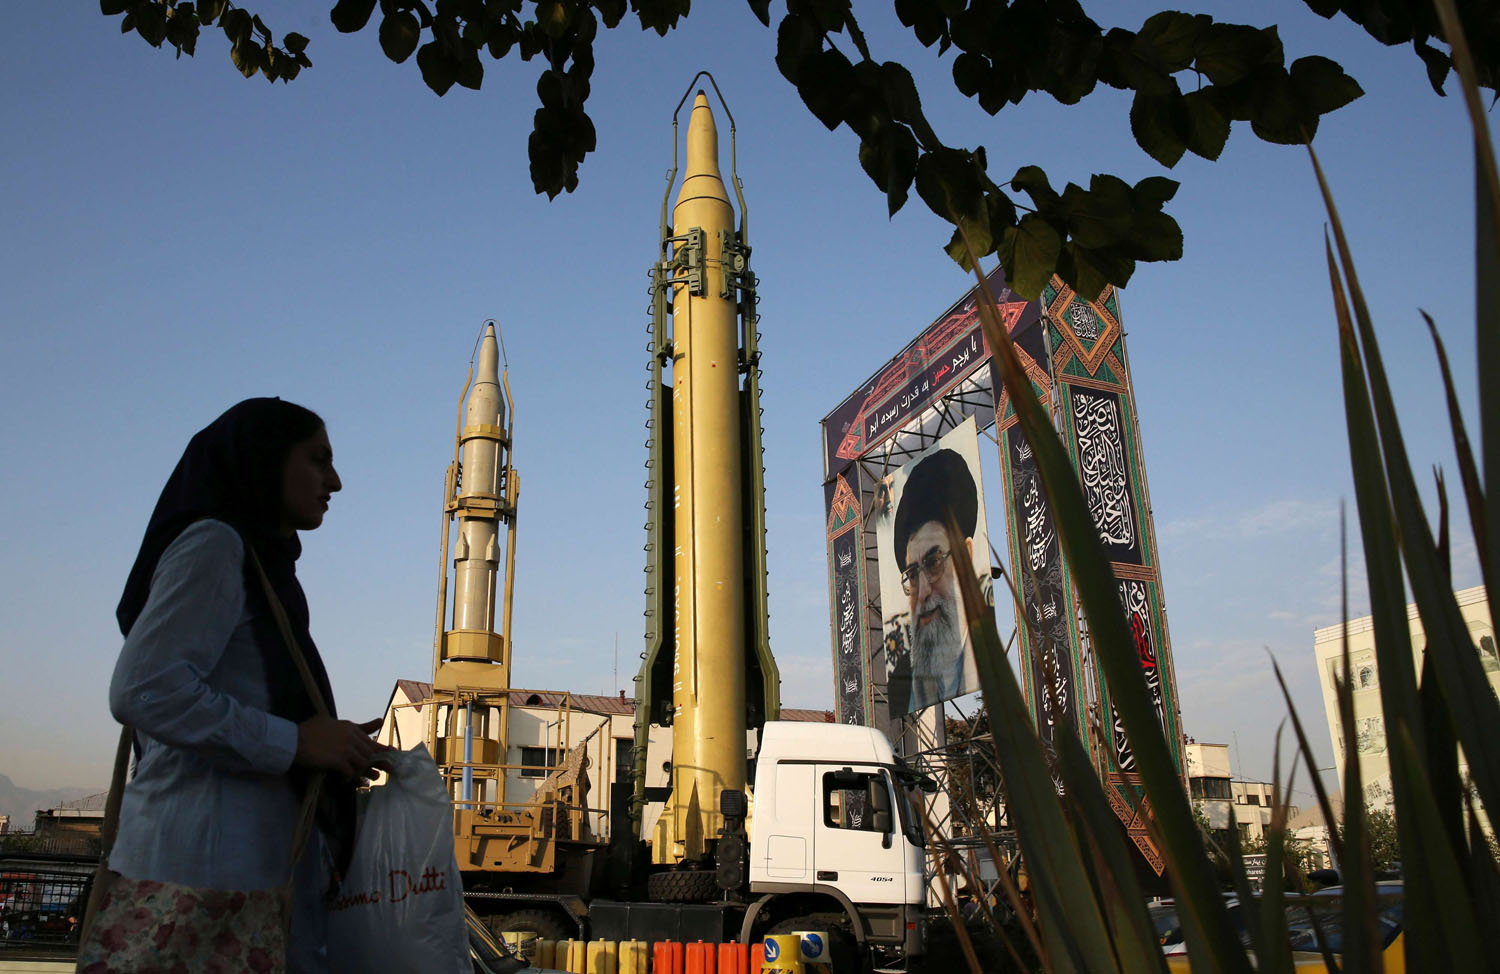 إيرانية تمر بالقرب من صواريخ تستعرض بها إيران قوتها في المنطقة